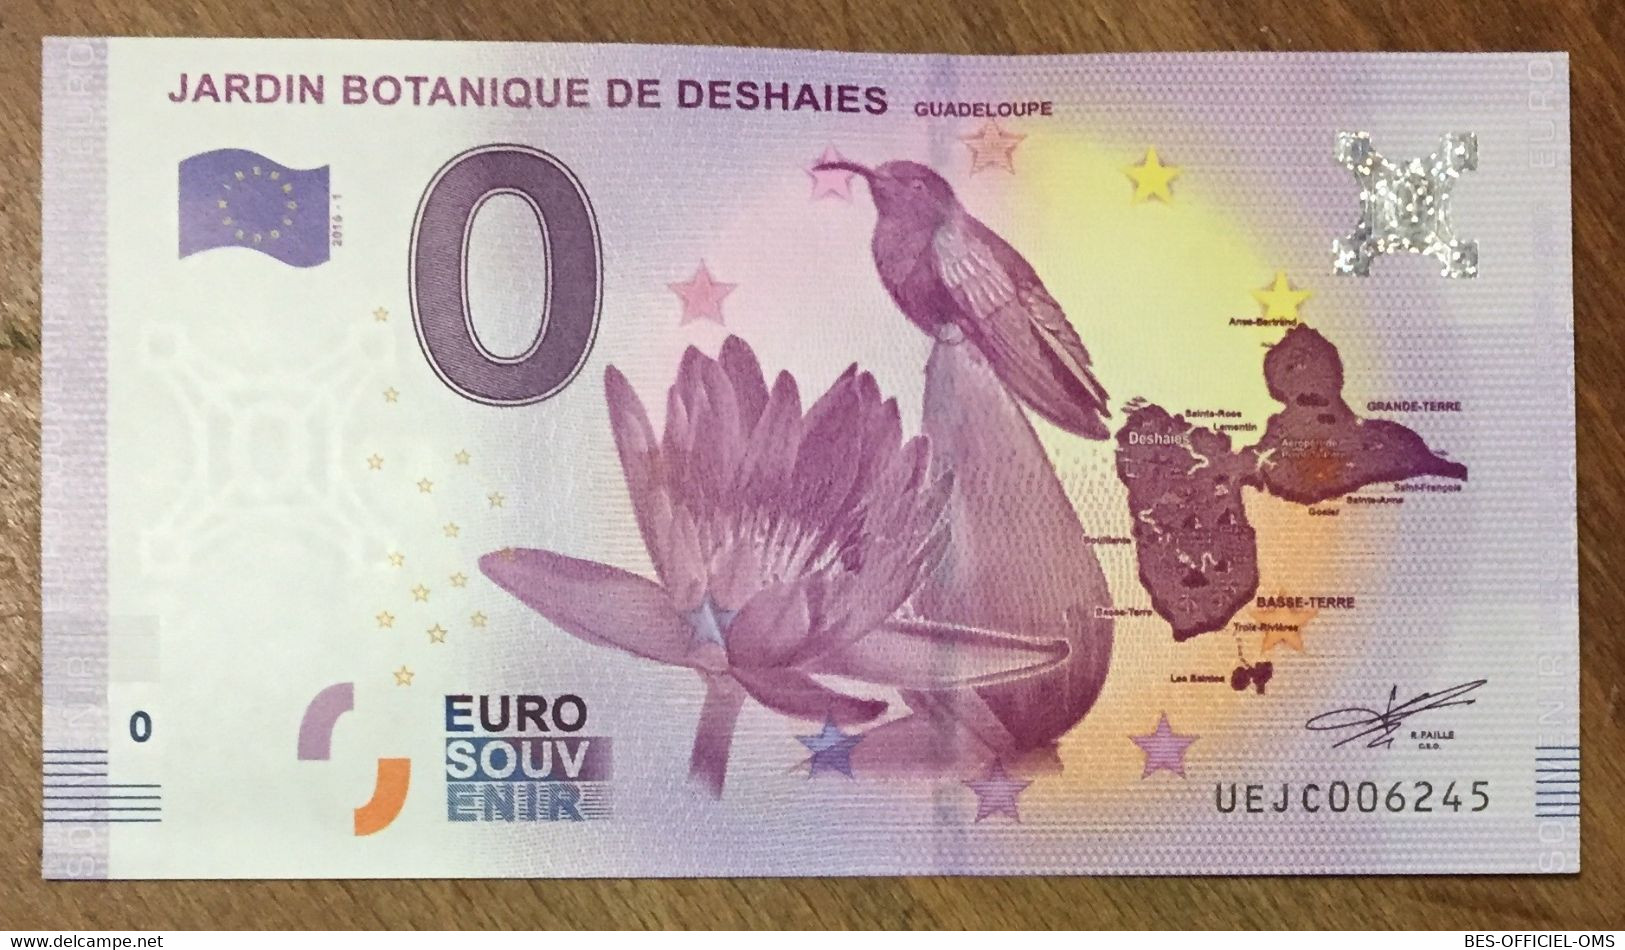 2016 BILLET 0 EURO SOUVENIR DPT 97 JARDIN BOTANIQUE DE DESHAIES GUADELOUPE ZERO 0 EURO SCHEIN BANKNOTE PAPER MONEY - Private Proofs / Unofficial